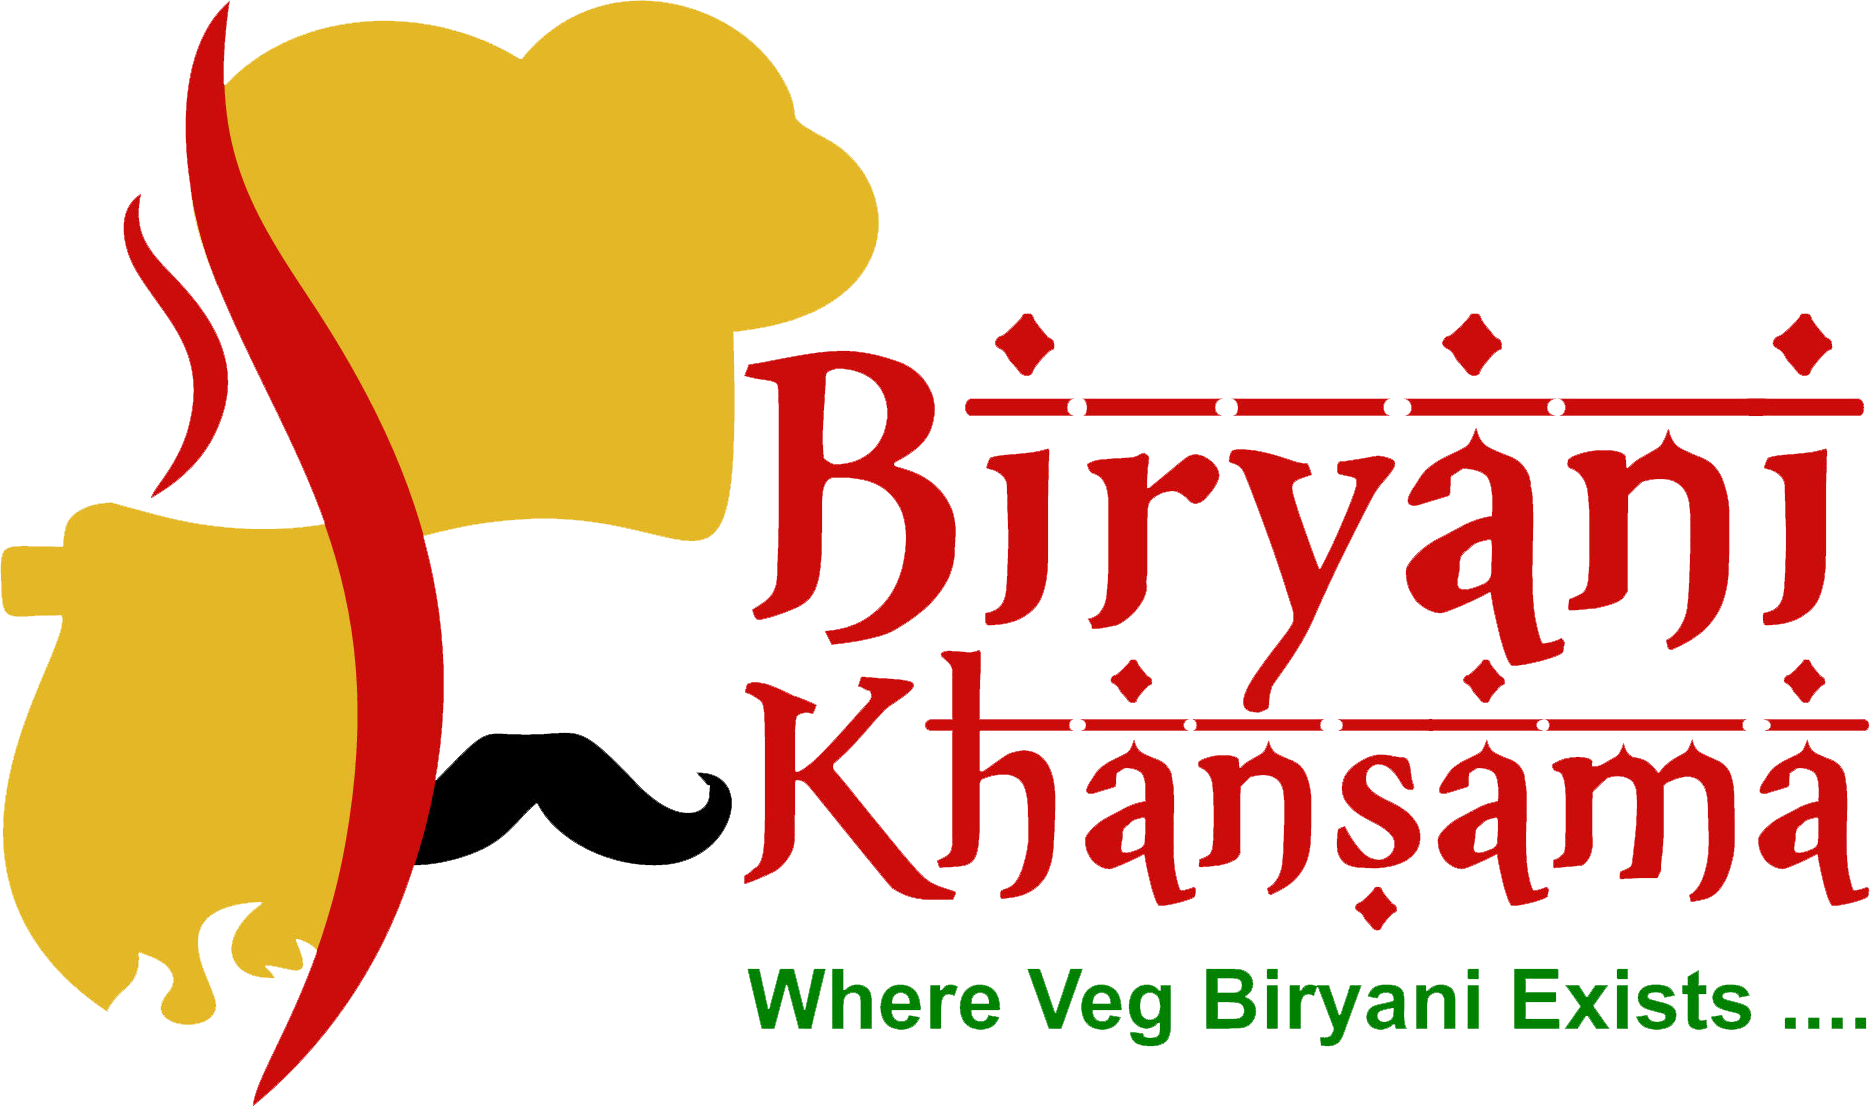 Biryani logo Vectors & Illustrations for Free Download | Freepik